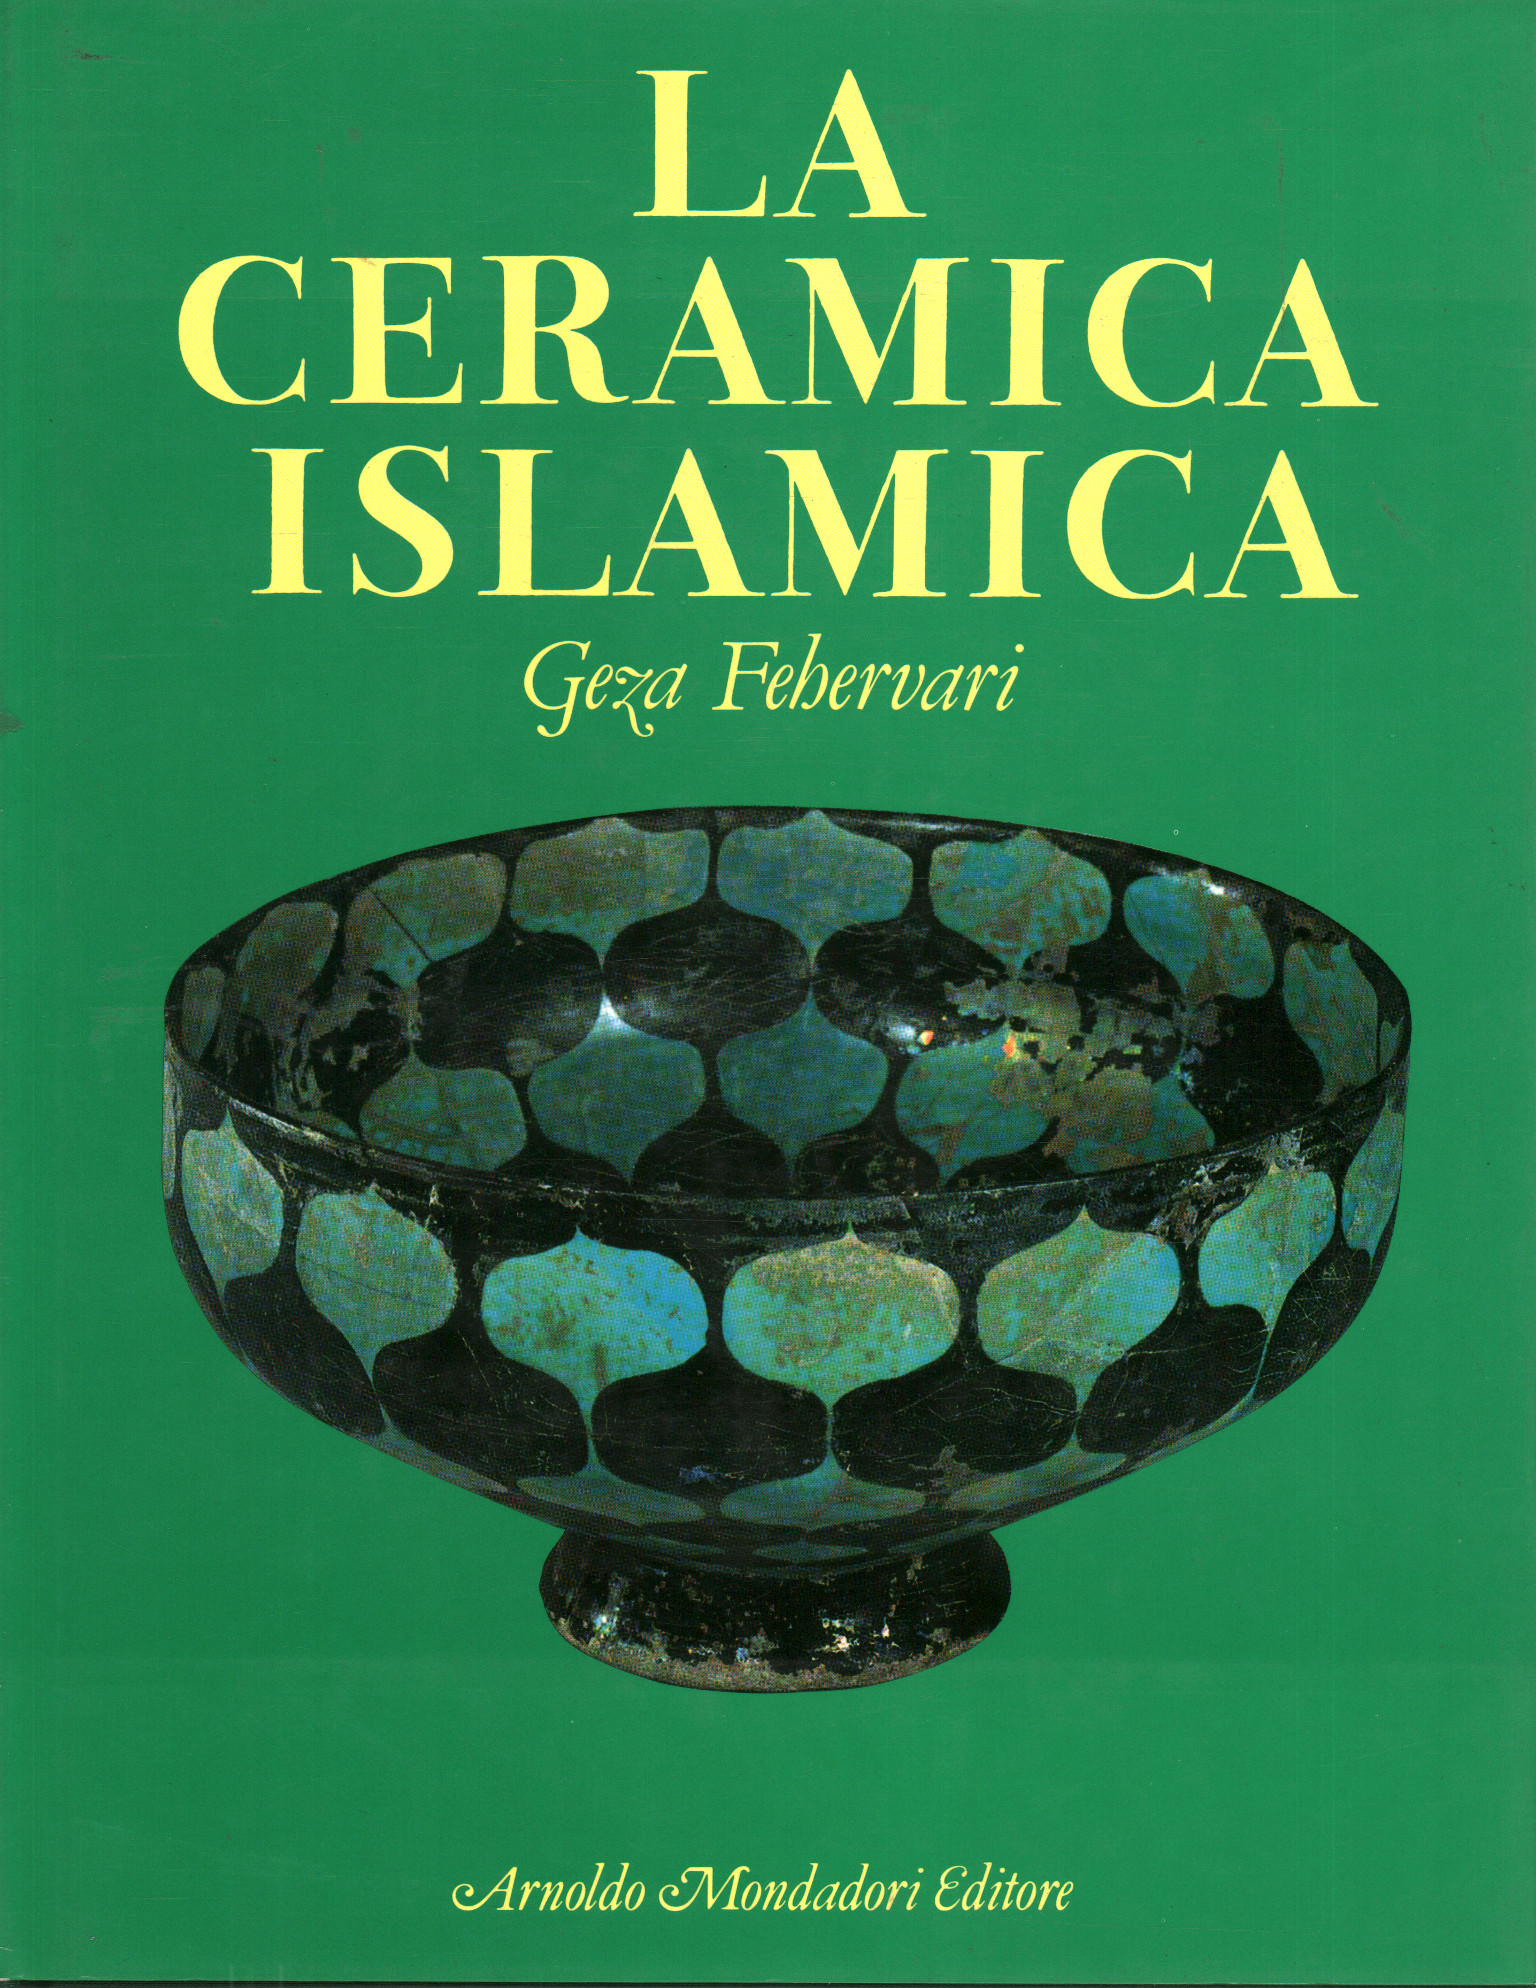 Islamic ceramics